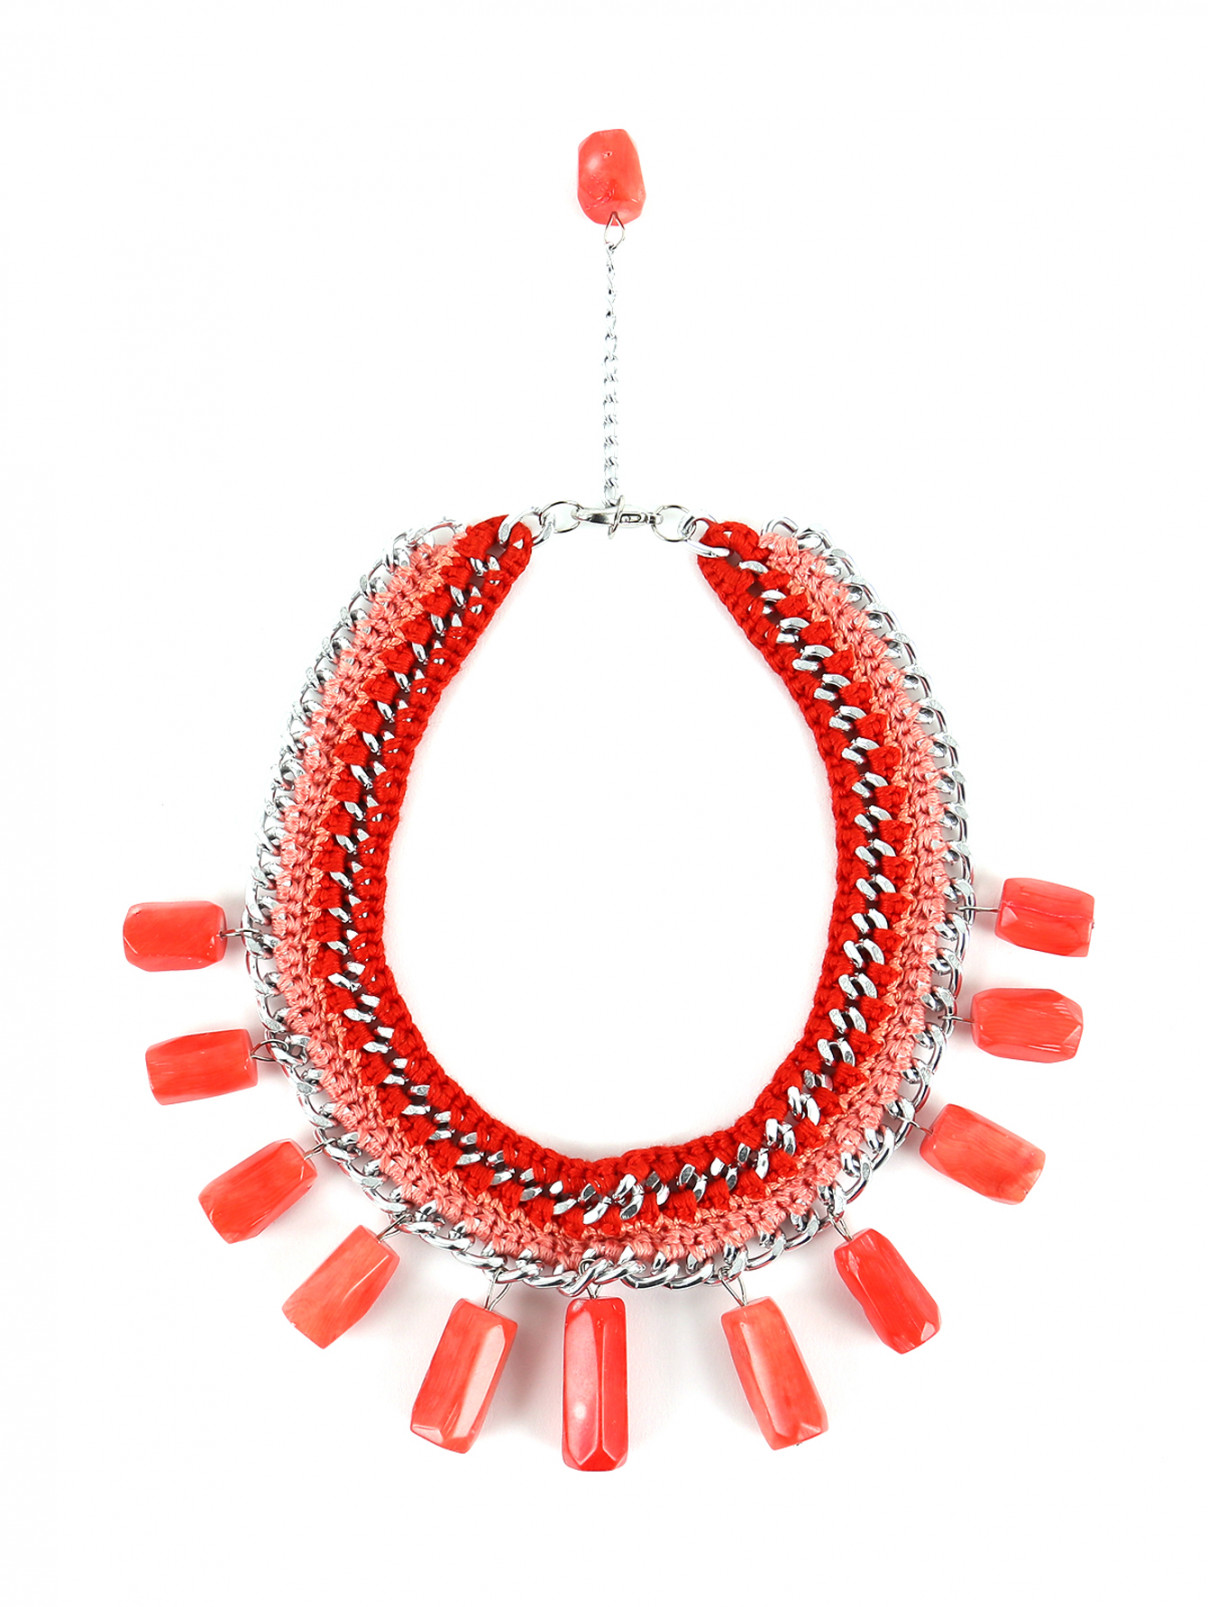 Ожерелье из текстиля и металла декорированное кораллом Inga Kazumyan  –  Общий вид  – Цвет:  Розовый